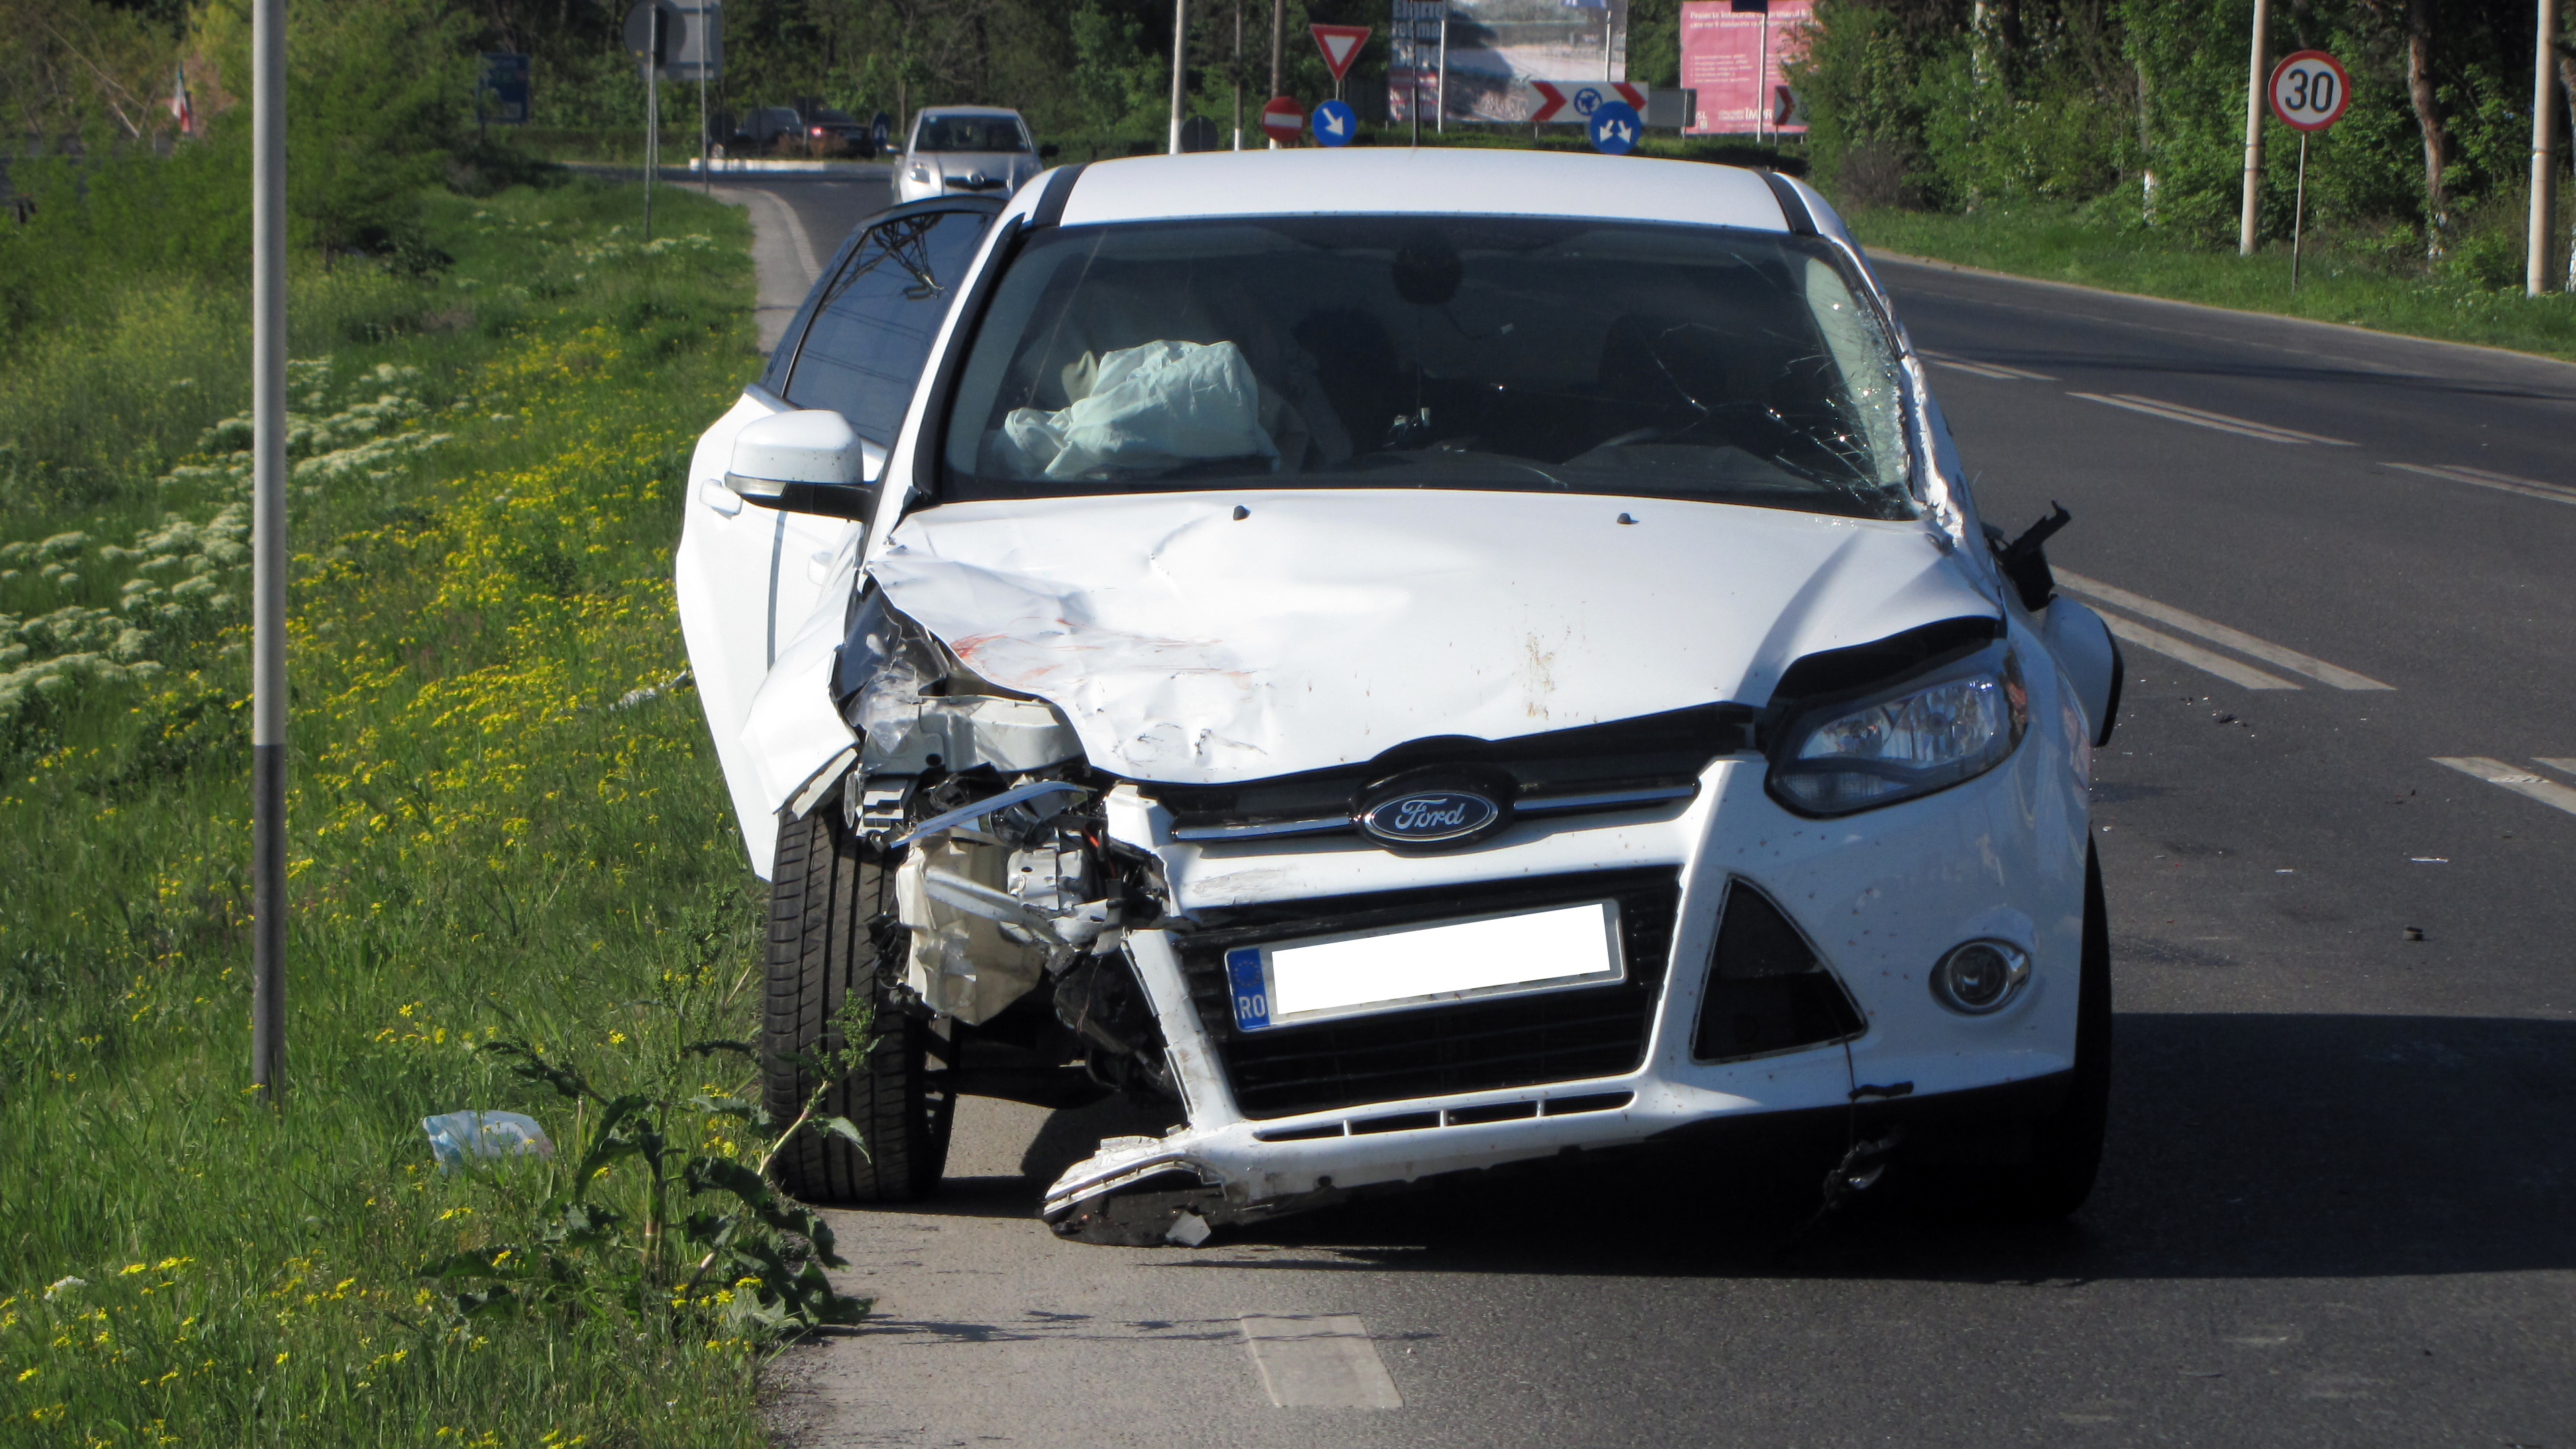 Soferul Fordului inmatriculat in Bucuresti a intrat cu viteza in masina din fata lui